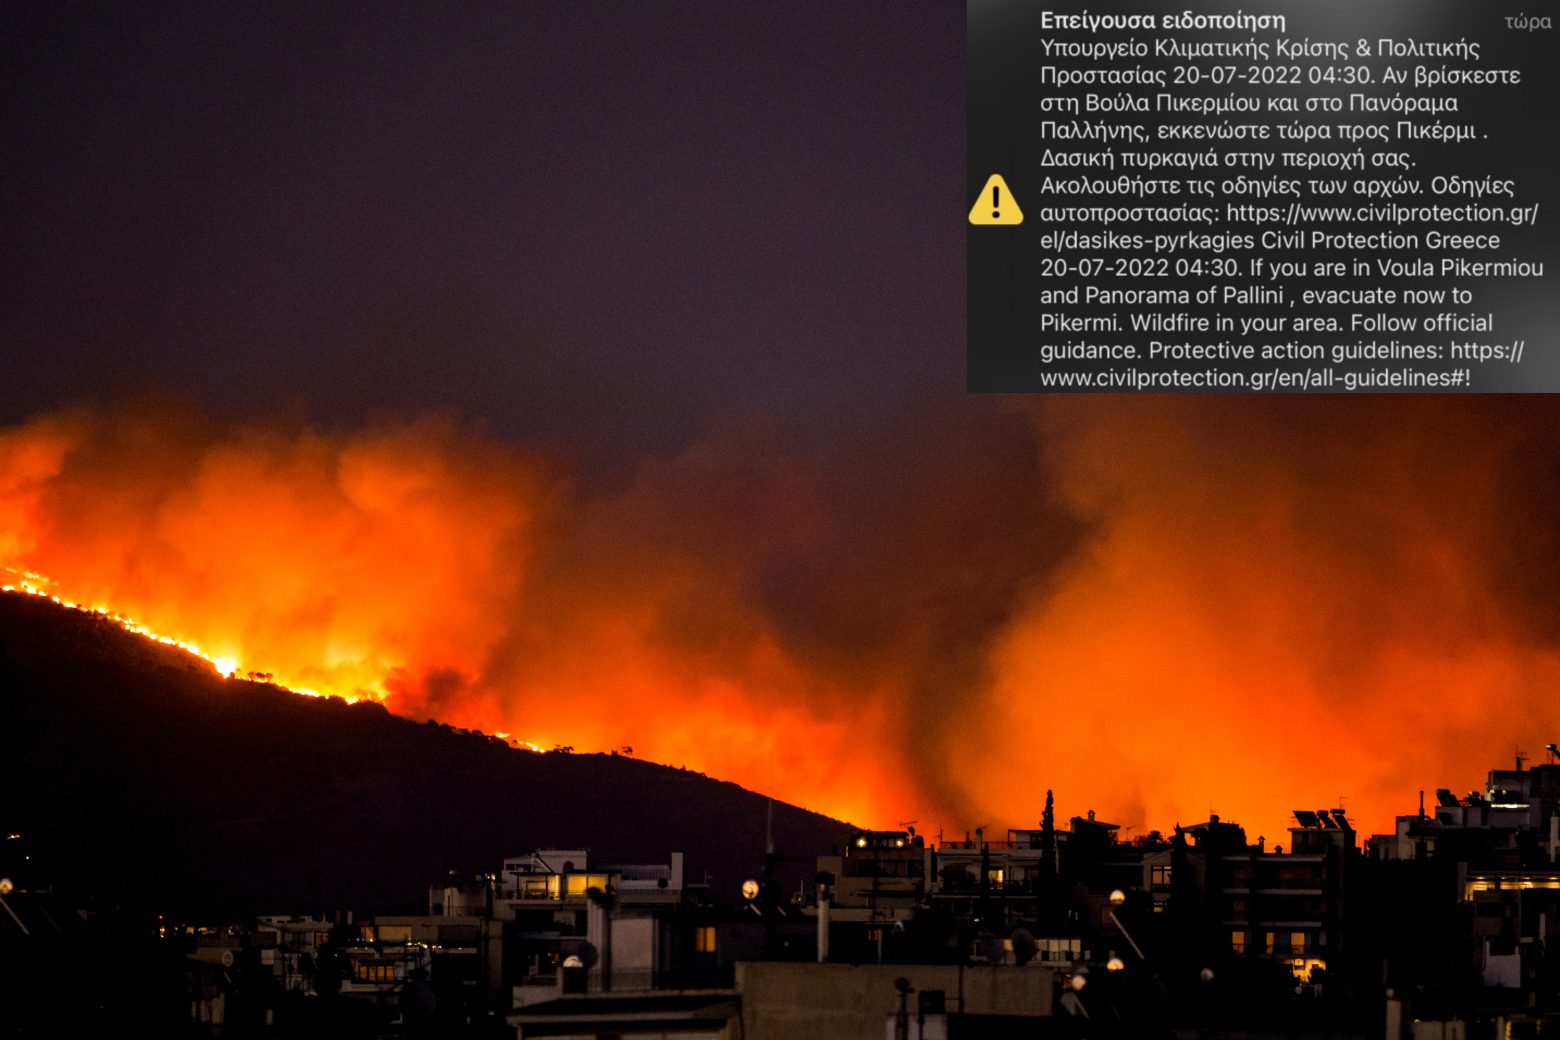 Φωτιά στην Πεντέλη: Νέο μήνυμα του 112 - Εκκενώνεται το Πανόραμα Παλλήνης